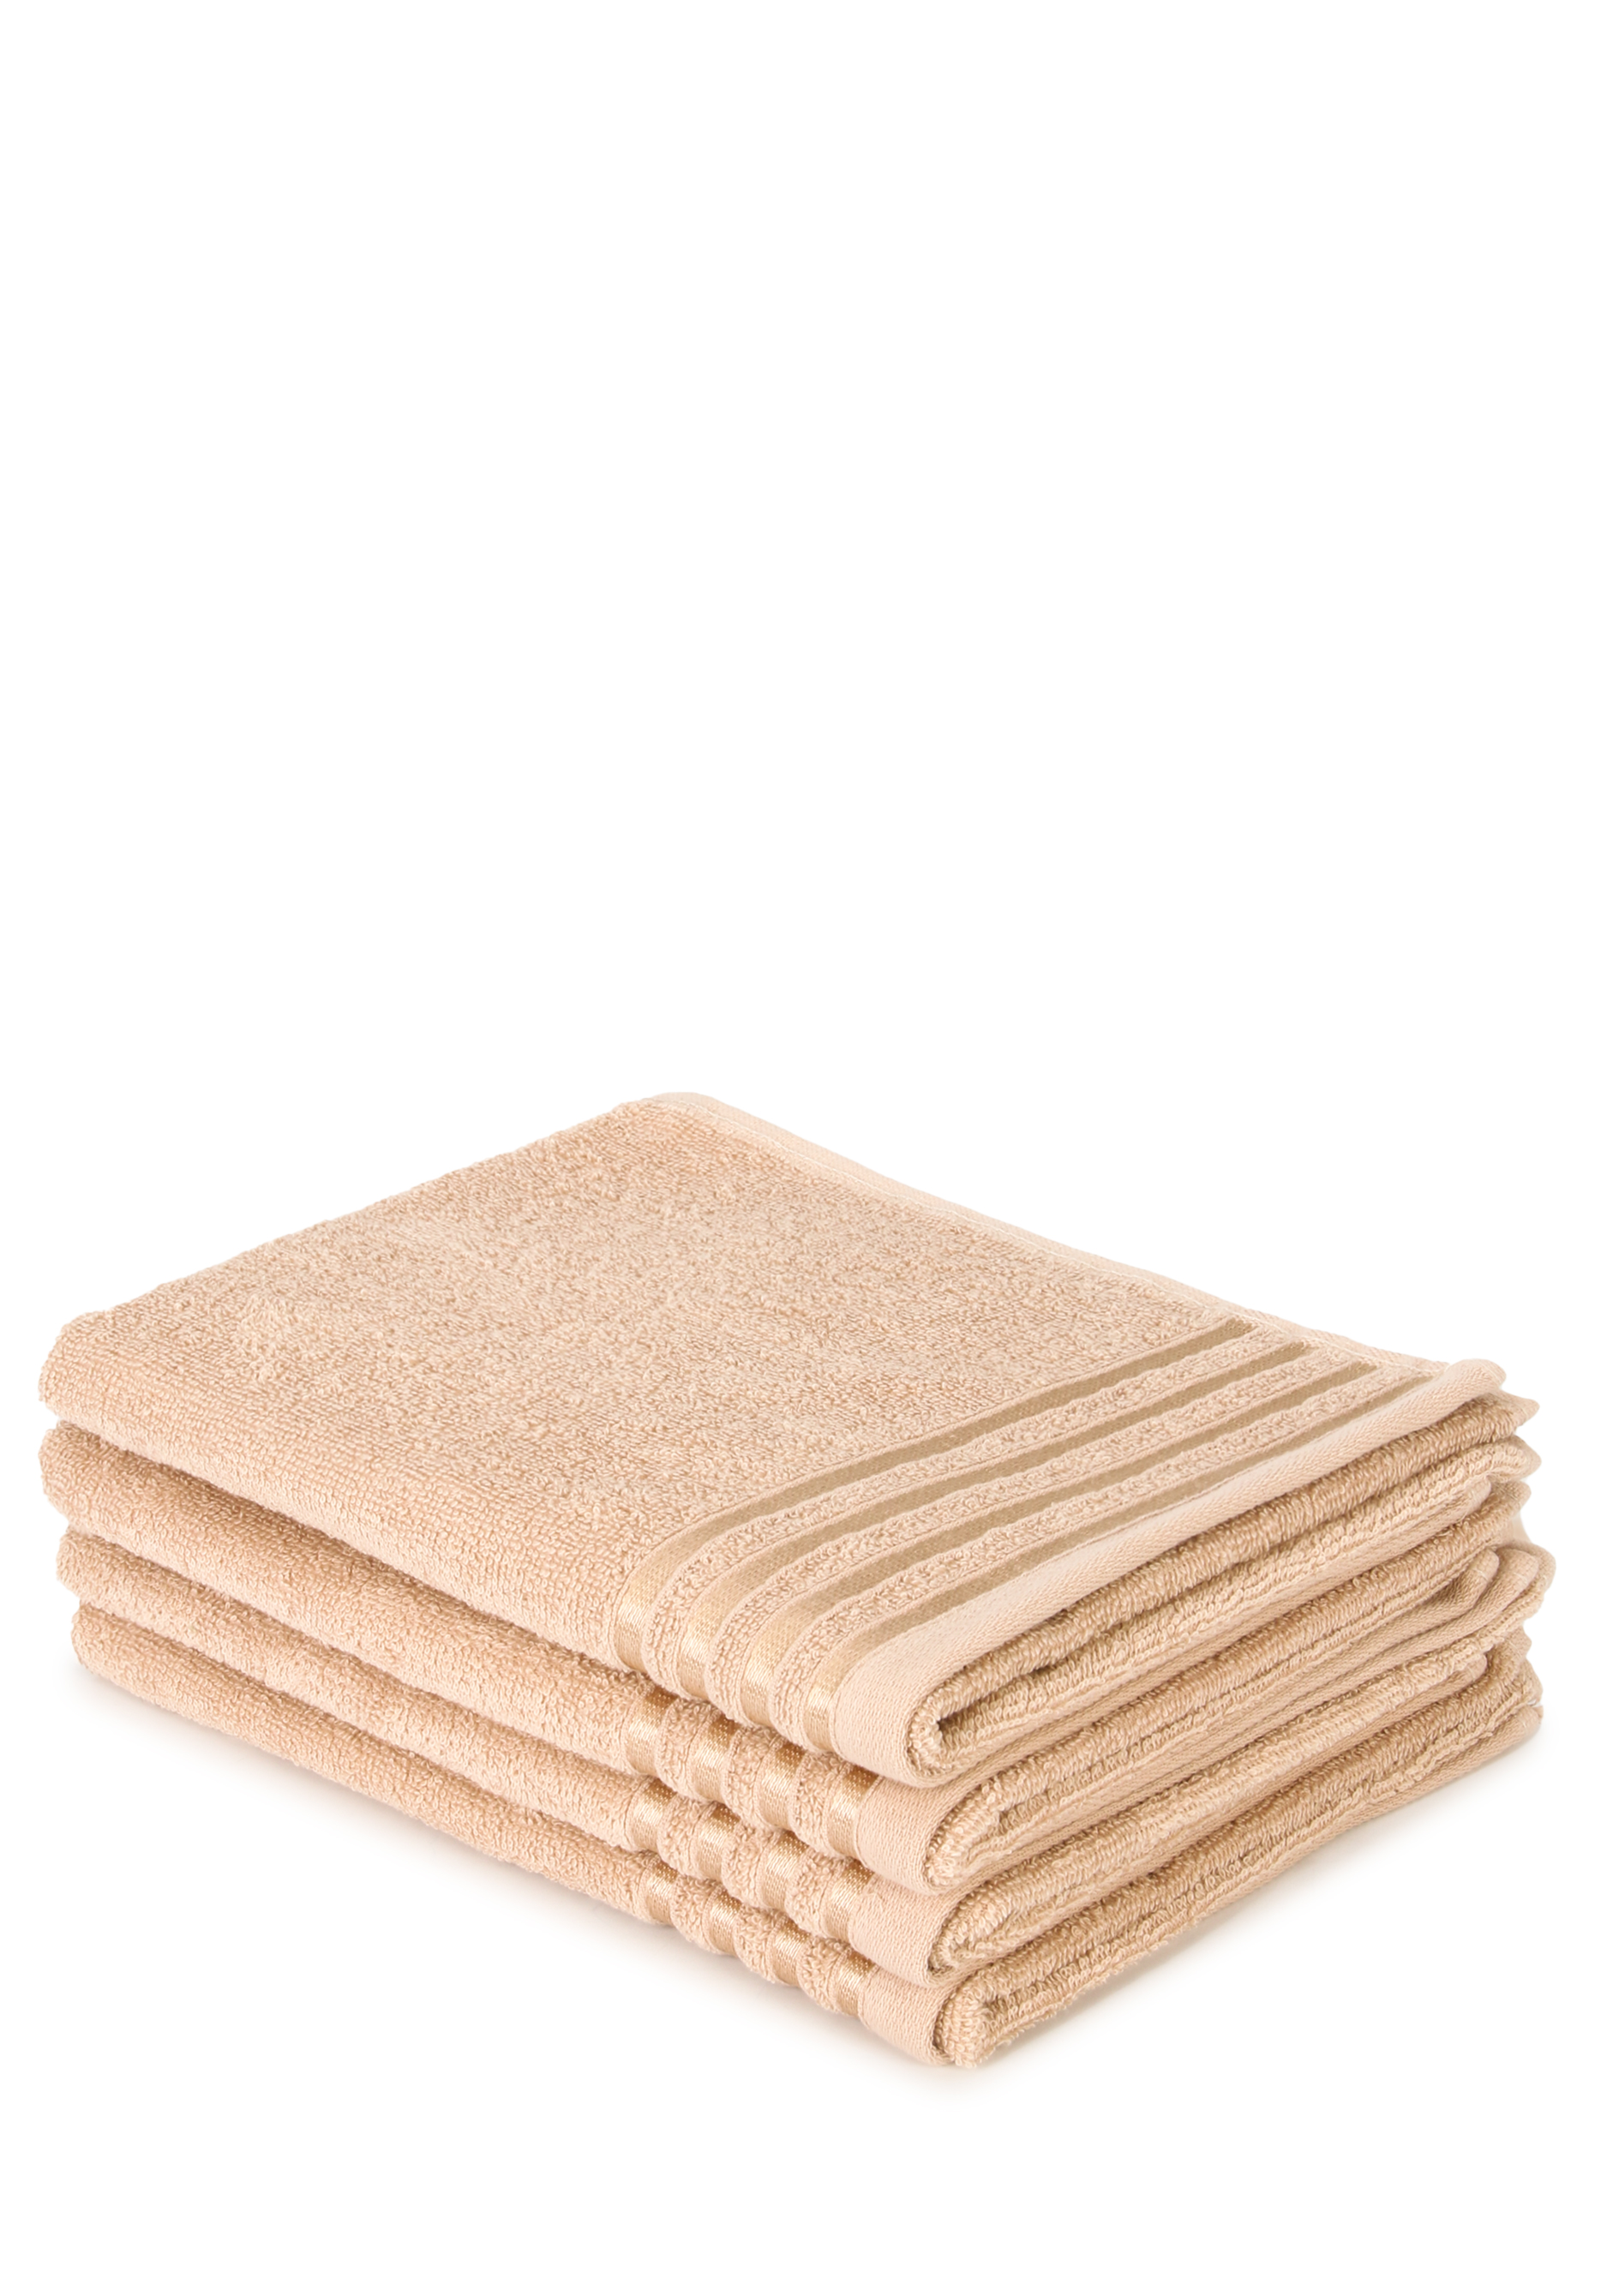 комплект махровых полотенец бон аппетит м0823 40x60 х 2шт Комплект полотенец 